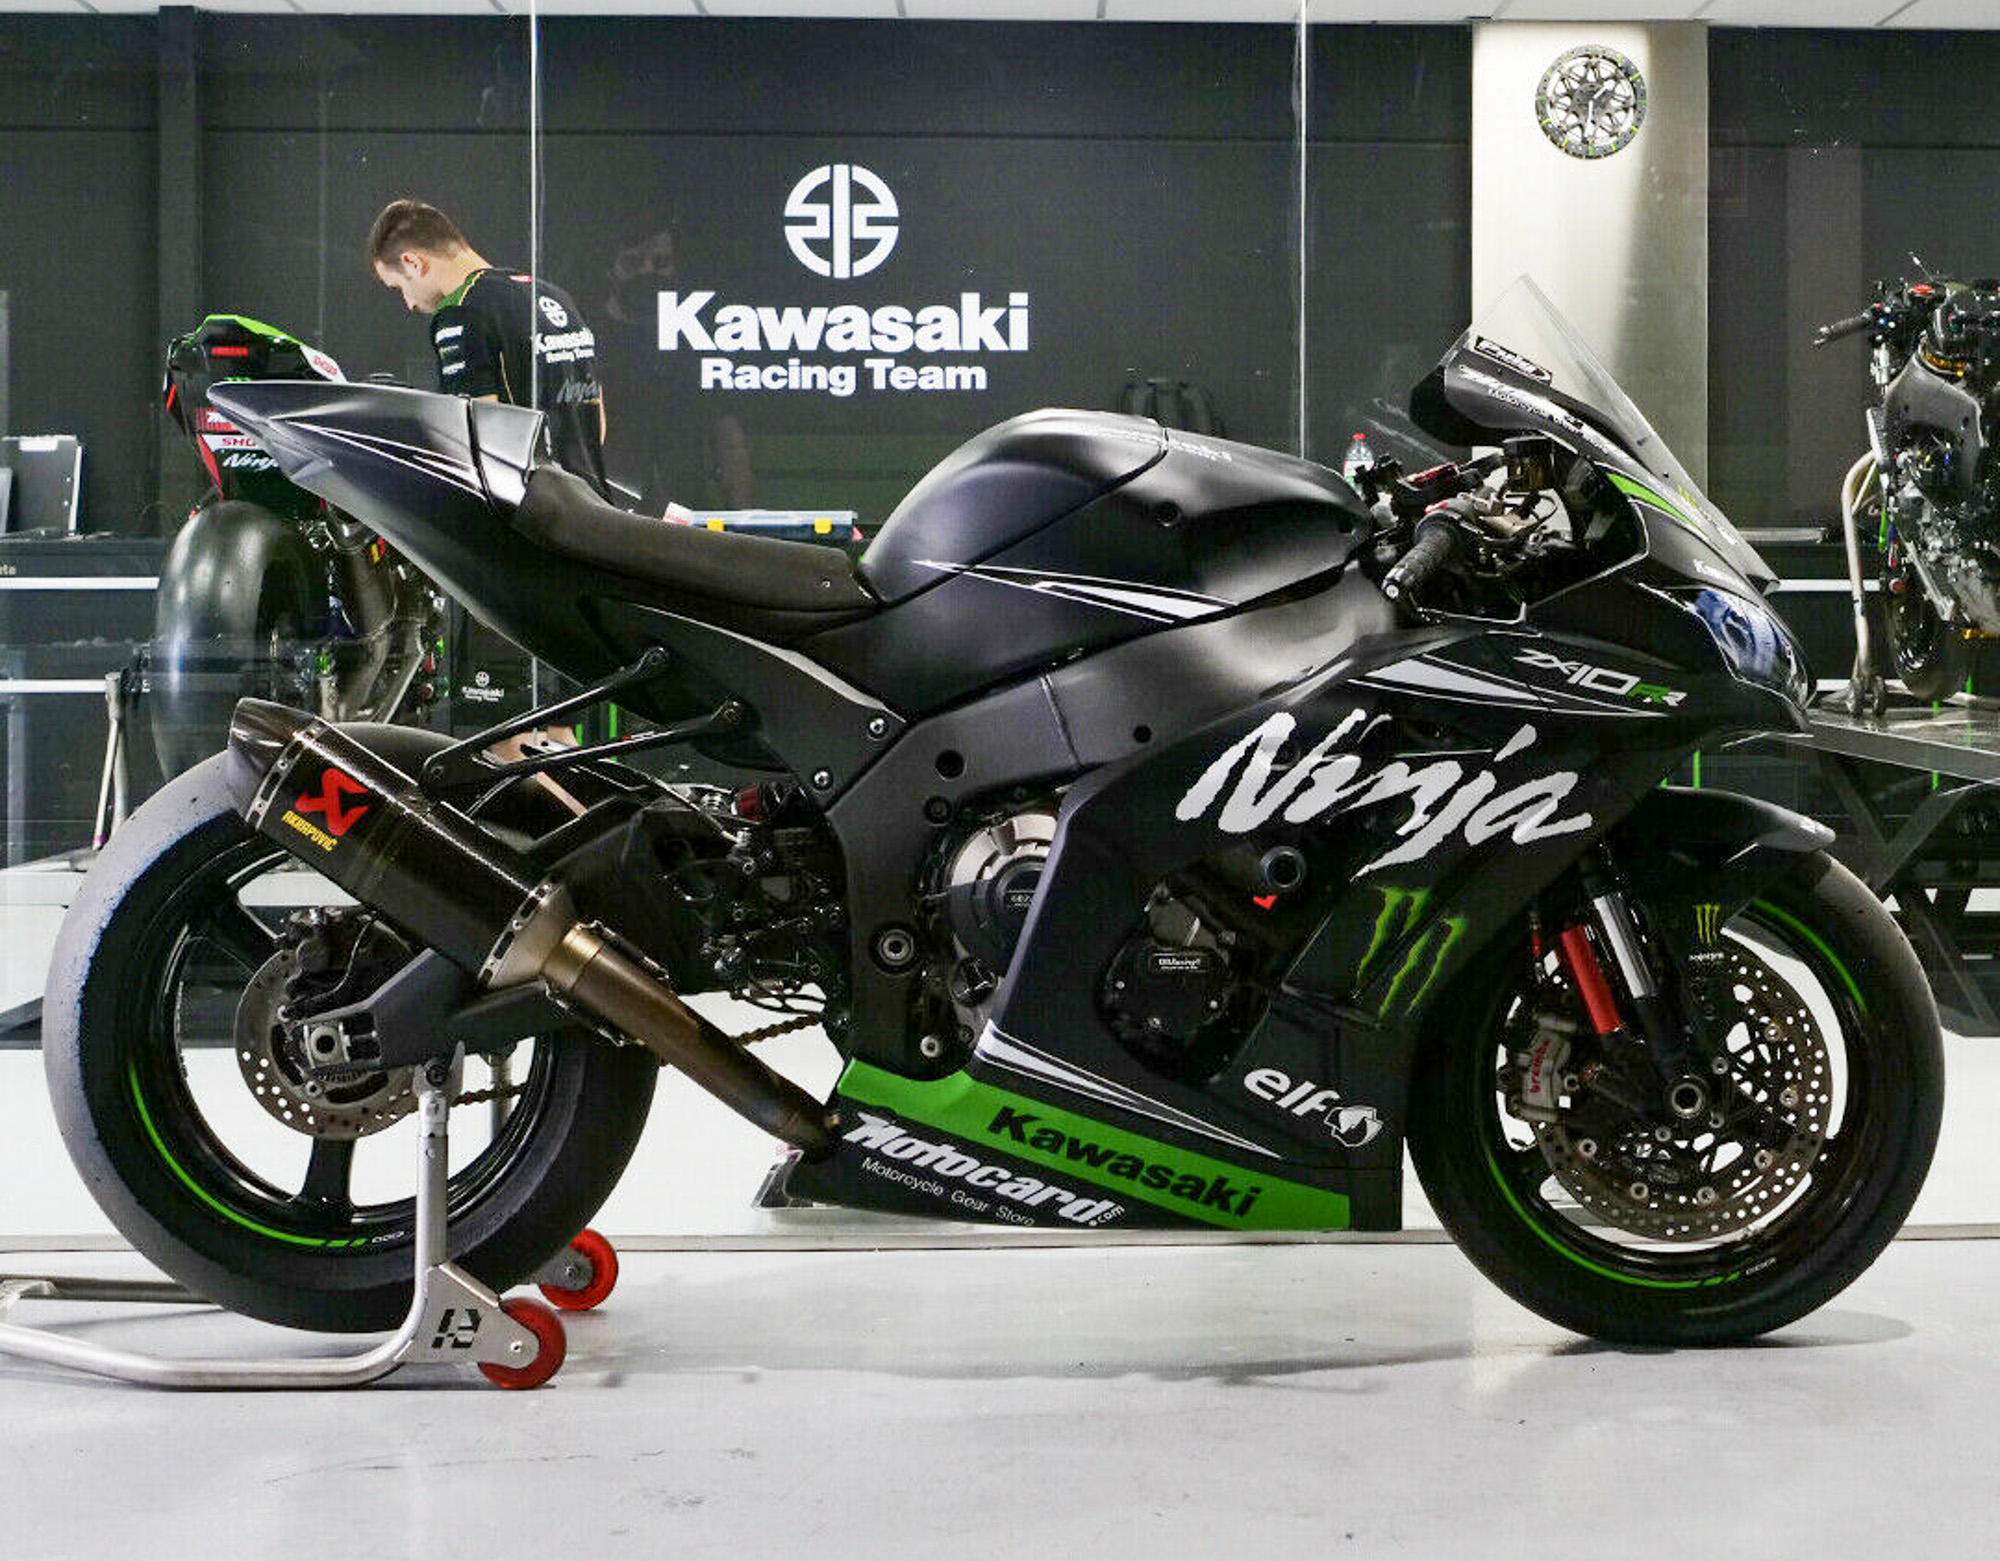 TopGear | Jonathan Rea's Kawasaki ZX-10R training track bike for sale